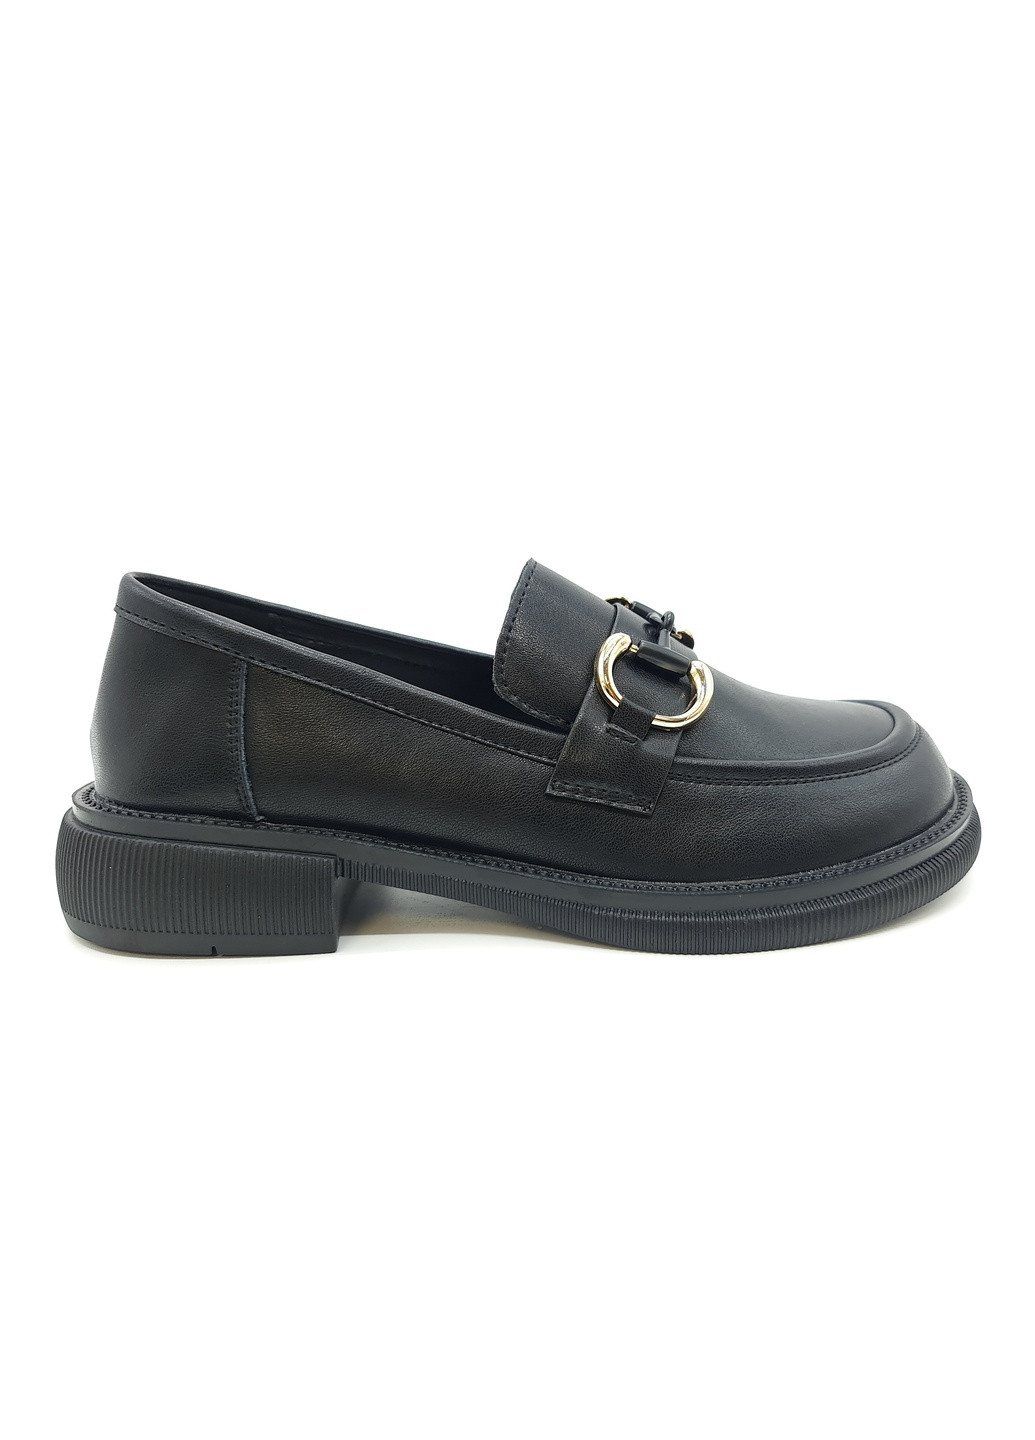 Женские туфли черные кожаные YA-17-3 23 см (р) Yalasou